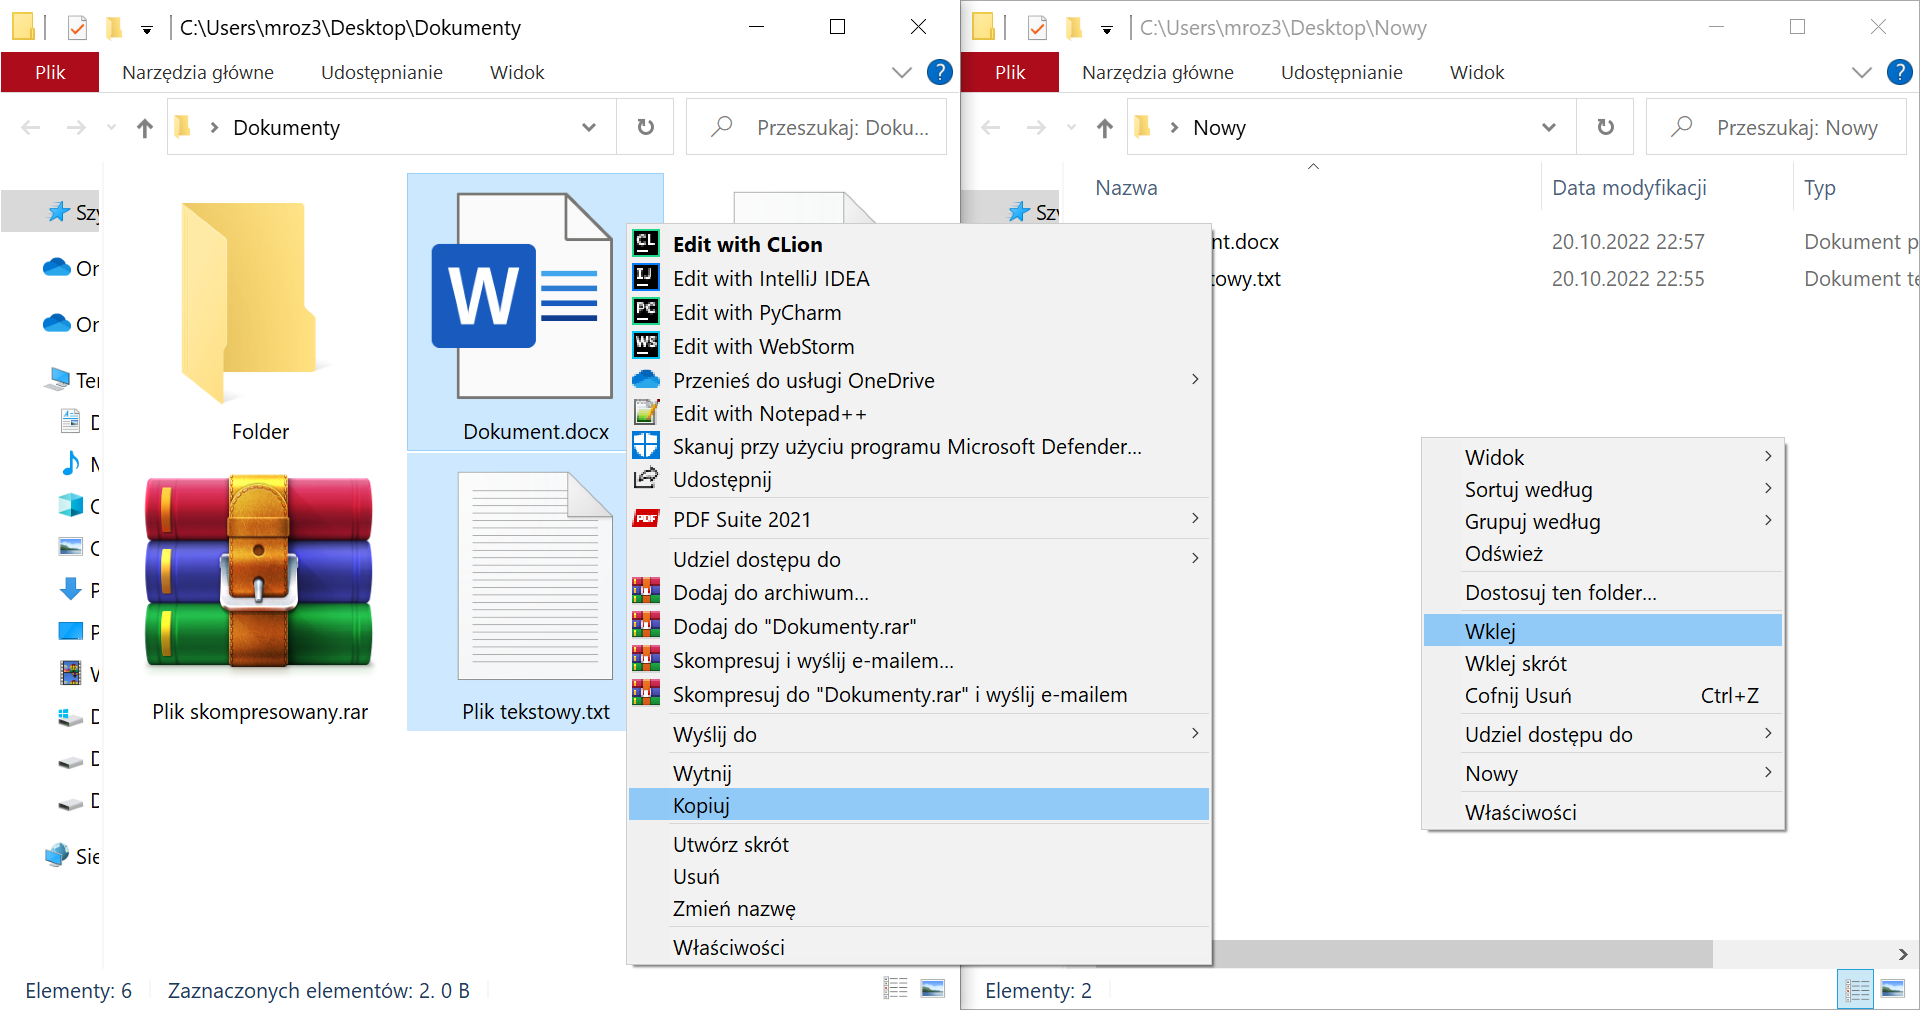 Zrzut z systemu Windows z otwartymi dwoma folderami "Dokumenty" oraz "Nowy" znajdującymi się na Pulpicie użytkownika "mroz3". Na zrzucie dokonywana jest operacja kopiowania dwóch zaznaczonych plików z folderu "Dokumenty" do "Nowy". W folderze "Dokumenty" znajduje się 6 elementów, w tym cztery widoczne - folder podpisany "Folder", dokument .docx podpisany "Dokument", plik skompresowany .rar podpisany "Plik skompresowany" oraz plik tekstowy .txt o nazwie "Plik tekstowy". Folder "Nowy" posiada dwa niewidoczne pliki .docx oraz .txt z datą modyfikacji 20.10.2022 o godzinie 22:57 oraz 22:55.  Zaznaczone i kopiowane są pliki  "Dokumenty" oraz "Plik tekstowy". W rozwiniętym menu kontekstowym w folderze "Dokumenty" dostępne są opcje "Otwórz", "NapiProjekt: Dodaj Napisy", "Drukuj", "Edytuj", "Udostępnij przez Skype'a", "Edit with CLion", "Edit with IntellJ IDEA", "Edit with PyCharm", "Edit with WebStorm", "Przenieś do usługi OneDrive", "Edit with Notepad++", "Skanuj przy użyciu programu Microsoft Defender", "Udostępnij", "Otwórz za pomocą", "PDF Suite 2021", "Udziel dostępu do", "Dodaj do archiwum", "Dodaj do "Dane.rar", "Skompresuj i wyślij e‑mailem..", "Skompresuj do "Dane.rar" i wyślij e‑mailem", "Przywróć poprzednie wersje", "Wyślij do...", "Wytnij", "Kopiuj", "Utwórz skrót", "Usuń", "Zmień nazwę", "Właściwości". Zaznaczona jest opcja "Kopiuj". W rozwiniętym menu kontekstowym w folderze "Nowy" dostępne są opcje "Widok", "Sortuj według", "Grupuj według", "Odśwież", "Dostosuj ten folder", "Wklej", "Wklej skrót", "Cofnij Usuń", "Udziel dostępu do", "Nowy", "Właściwości".  Wybrana jest opcja "Wklej". 